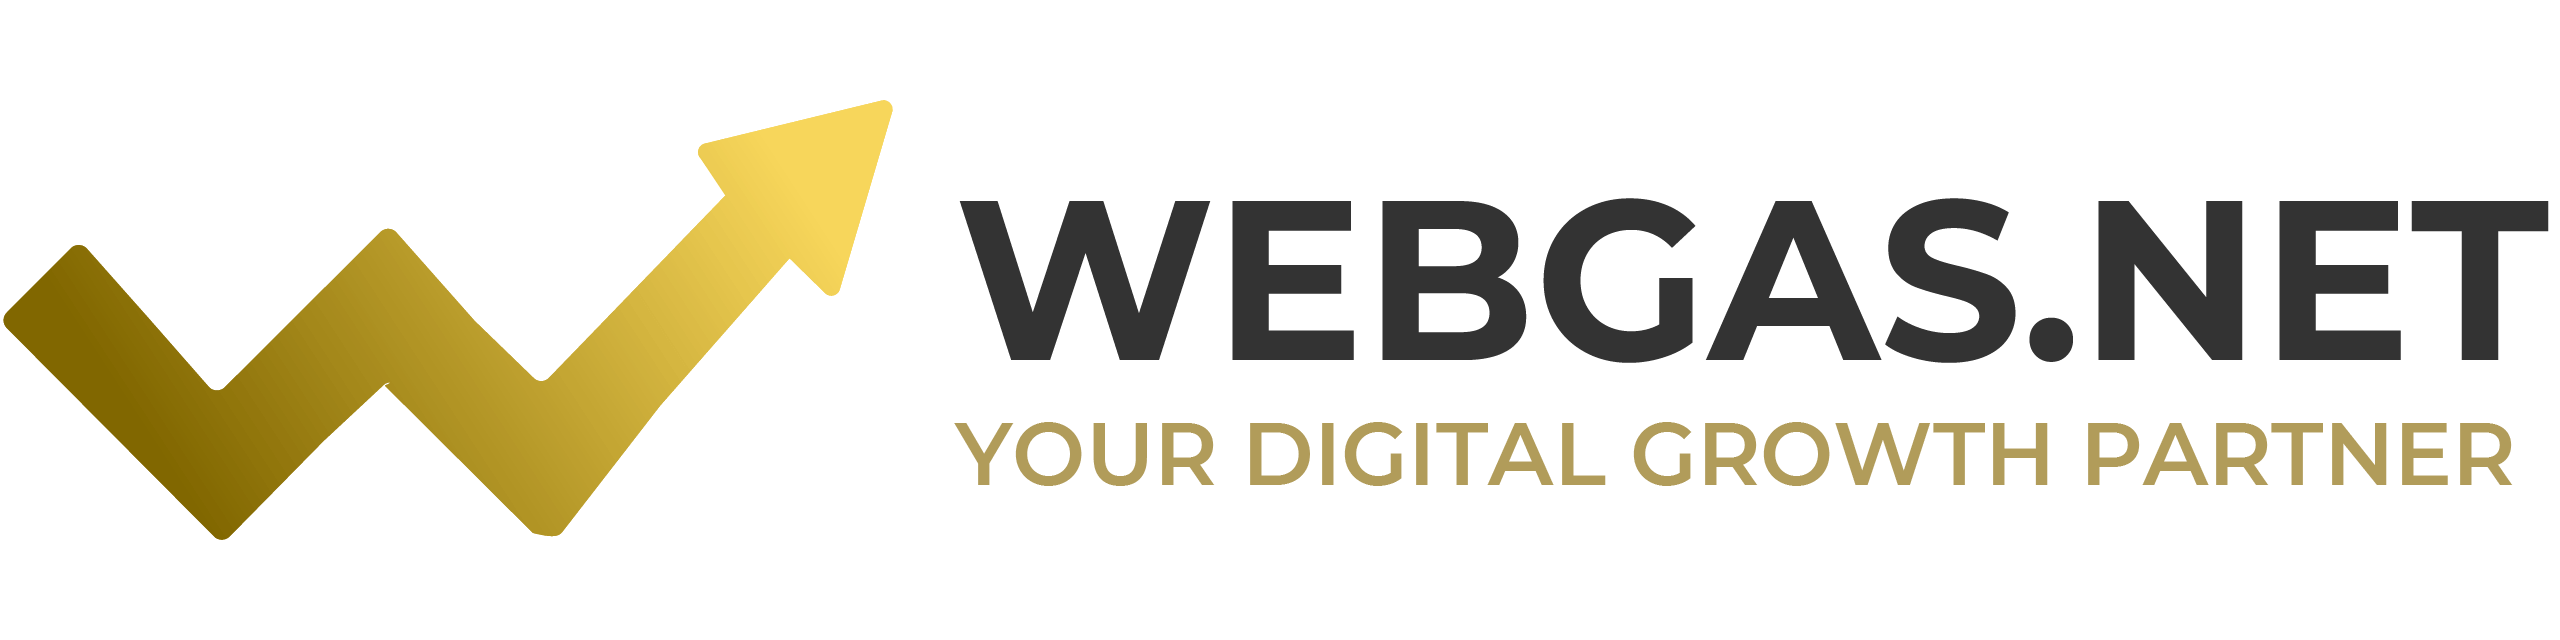 WebGas.net